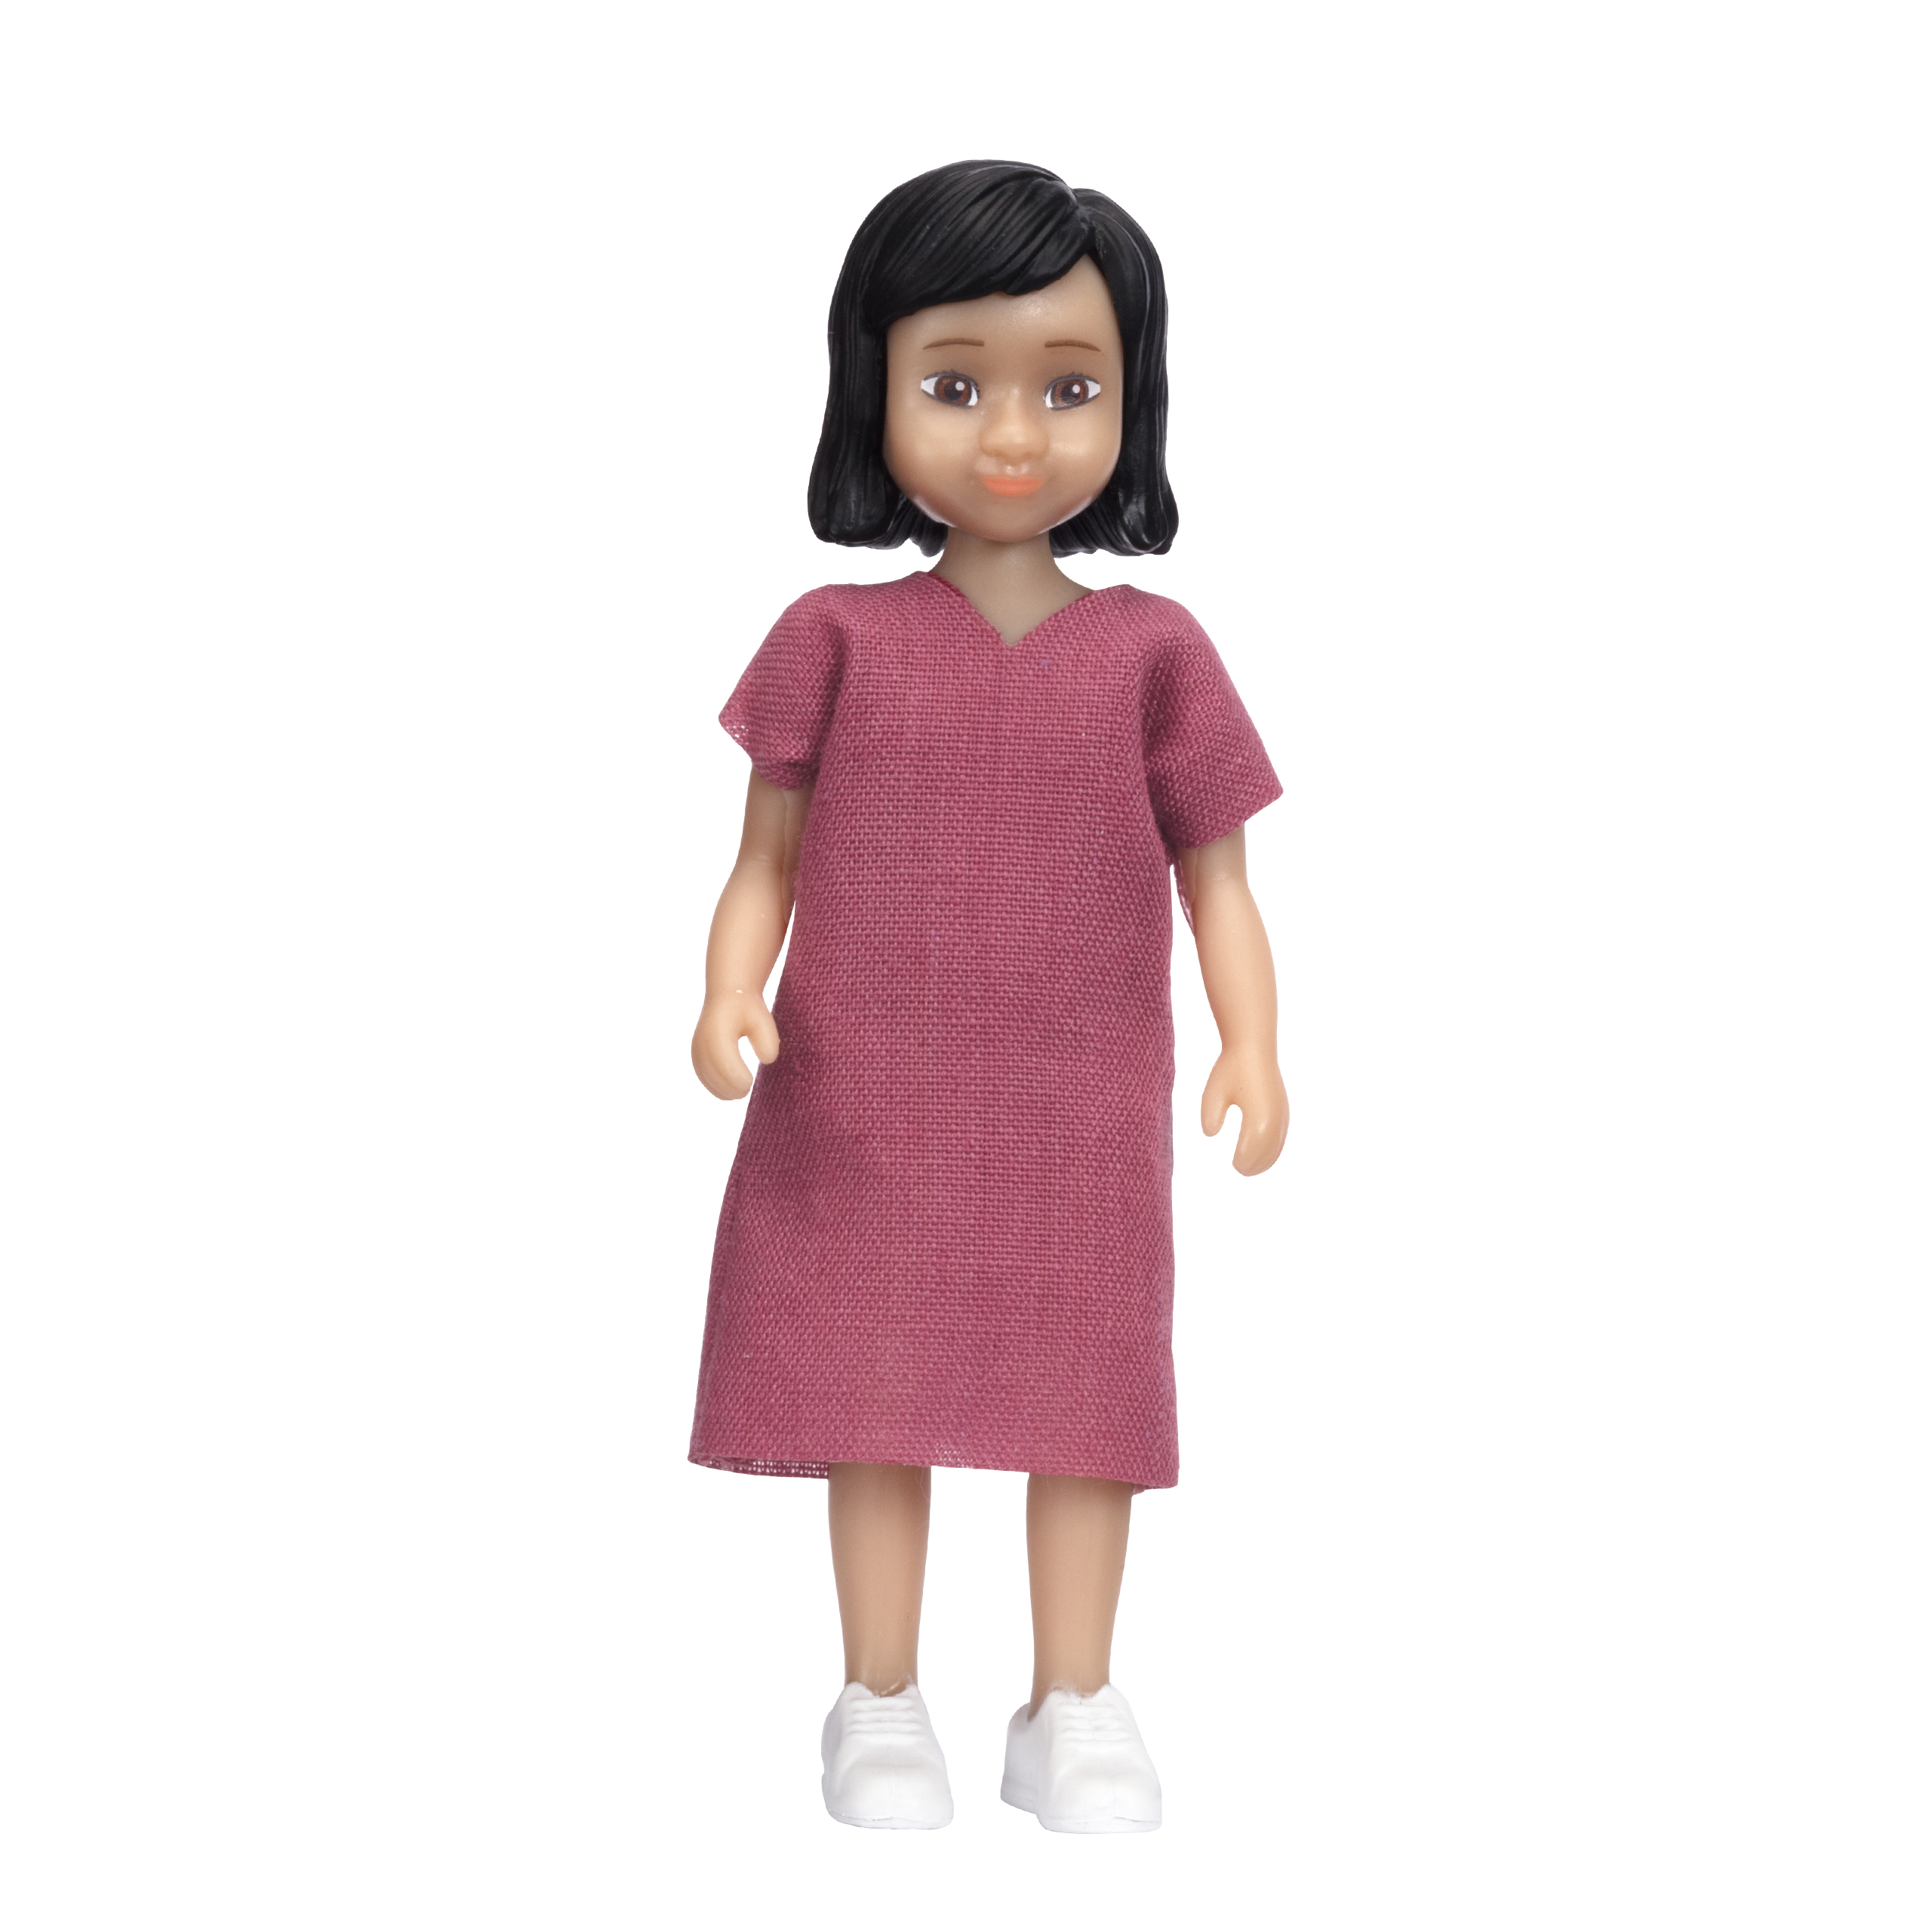 Lundby lundby dollhouse doll jamie girl